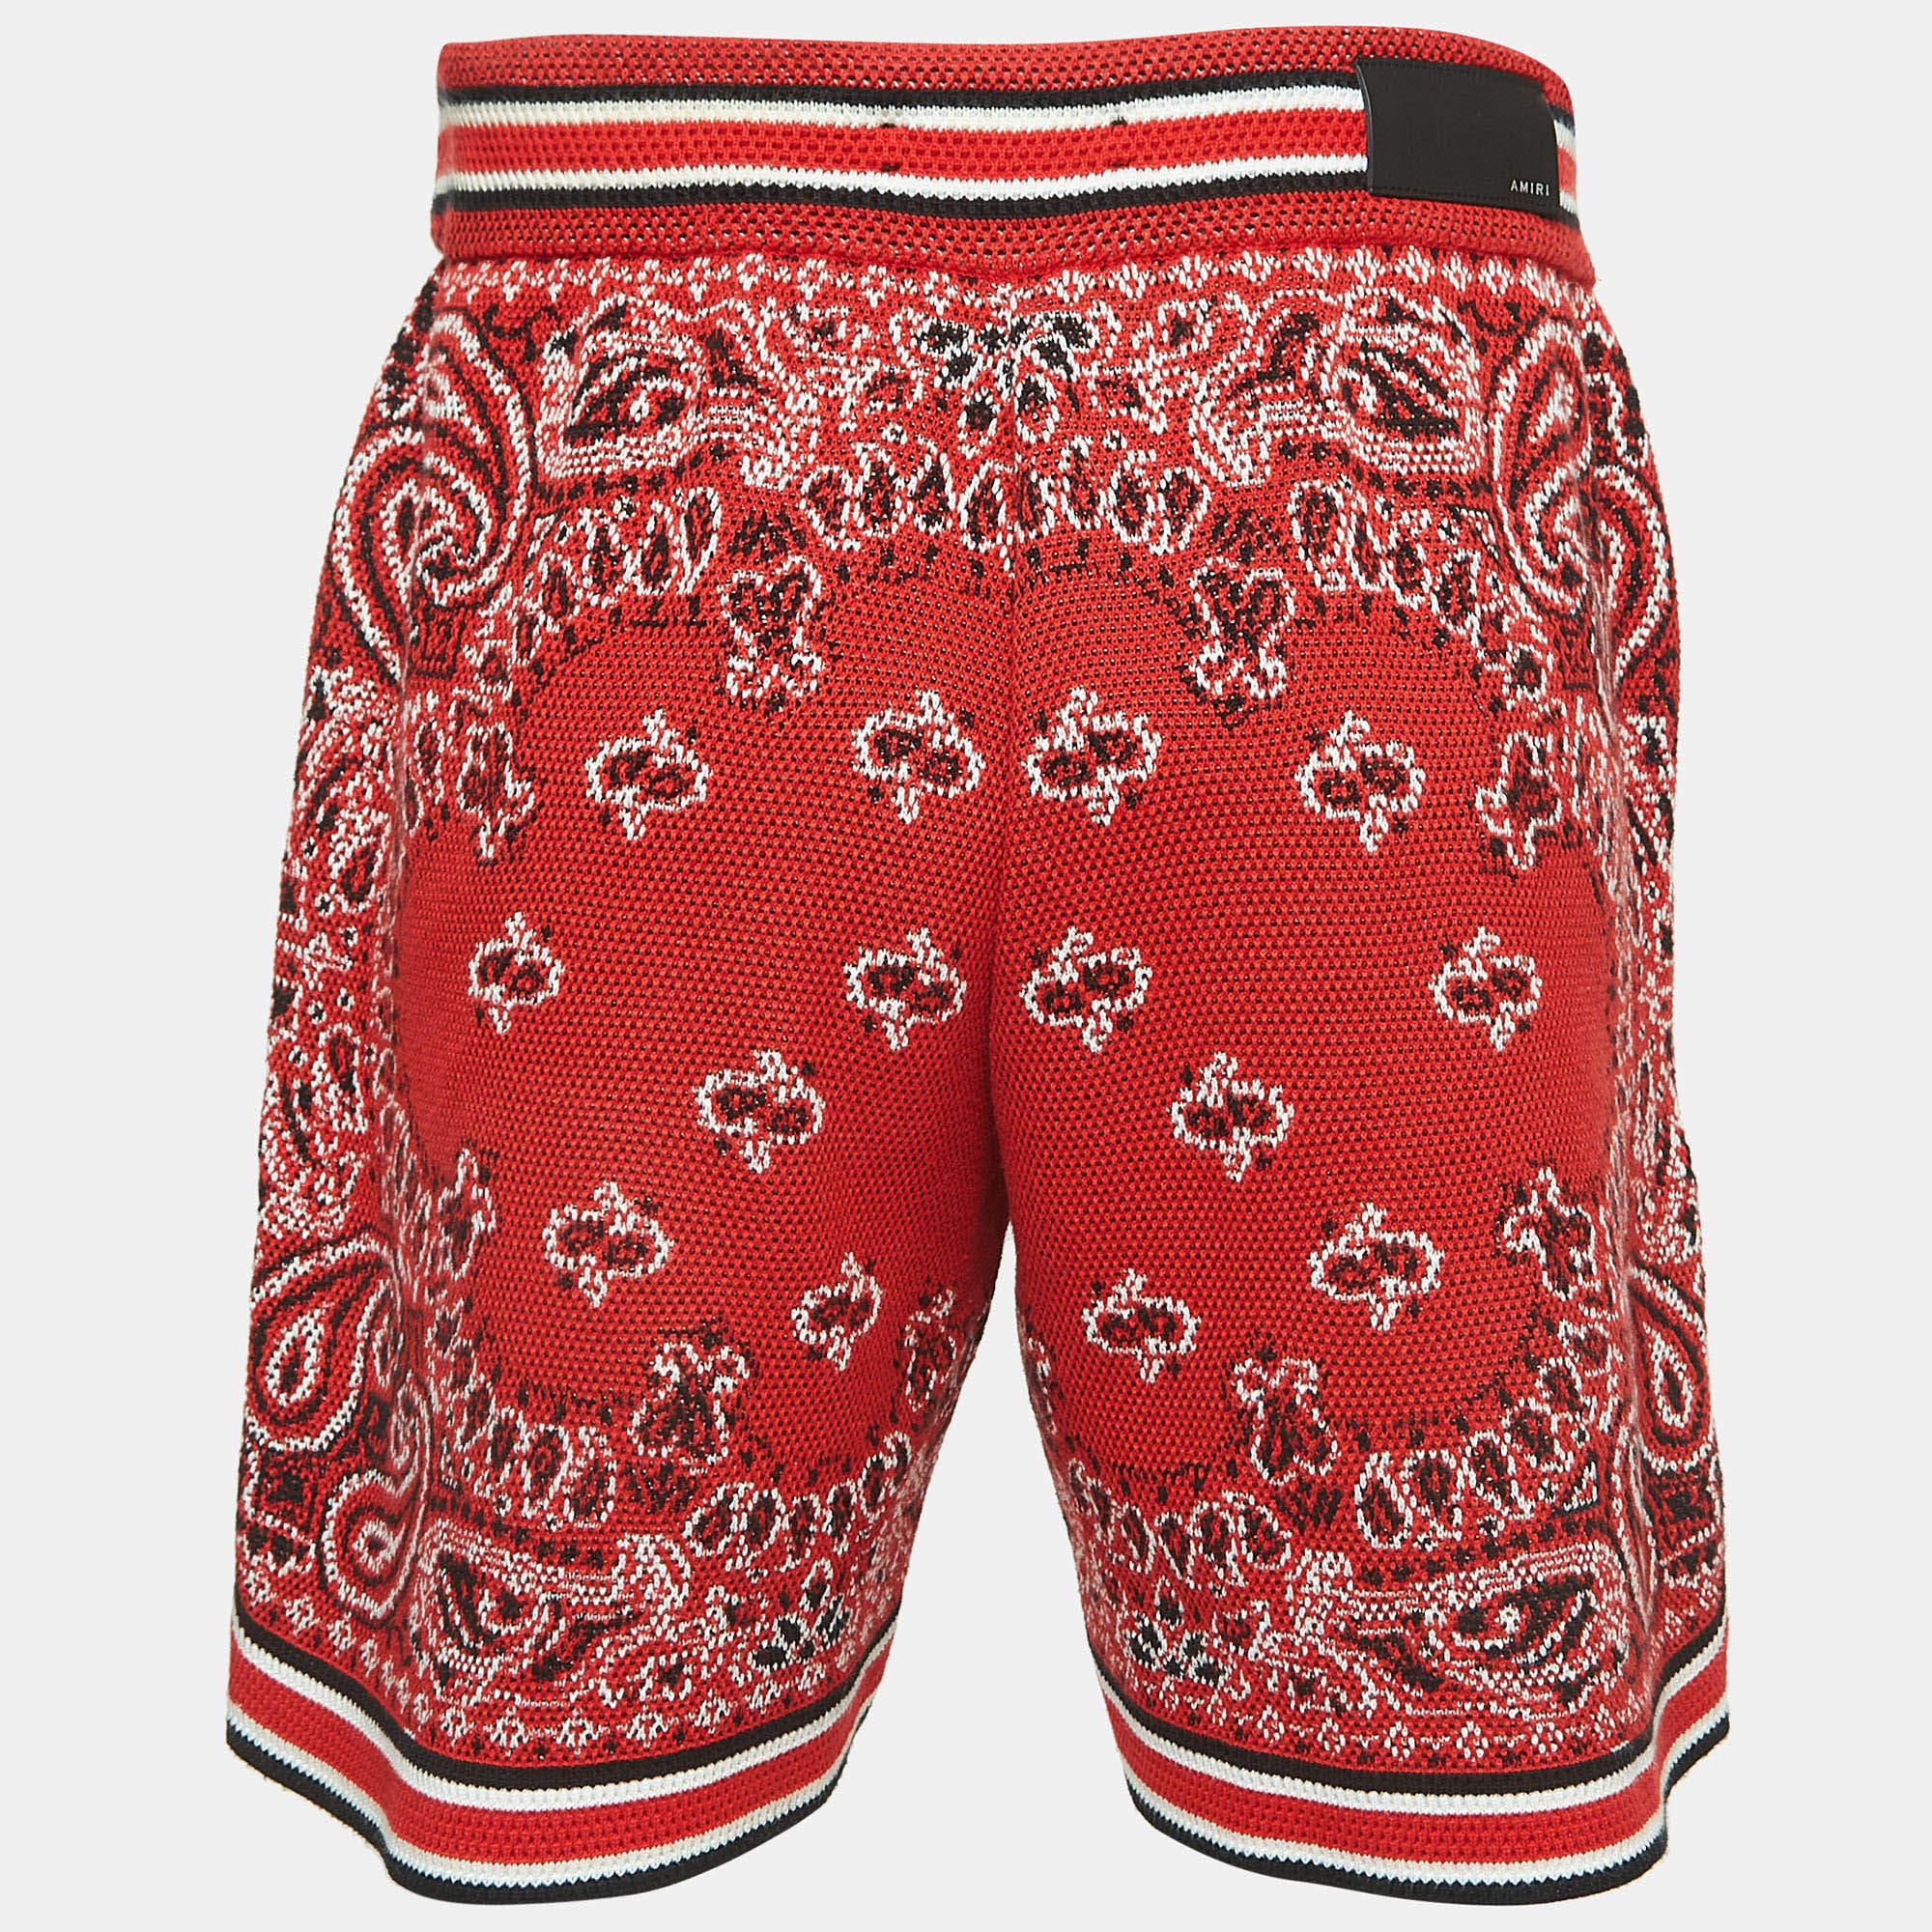 Strandurlaube verlangen nach einem stilvollen Paar Shorts wie diesem. Die aus hochwertigem Stoff genähten Shorts sind mit klassischen Details versehen und haben eine hervorragende Länge. Tragen Sie es zu T-Shirts.

